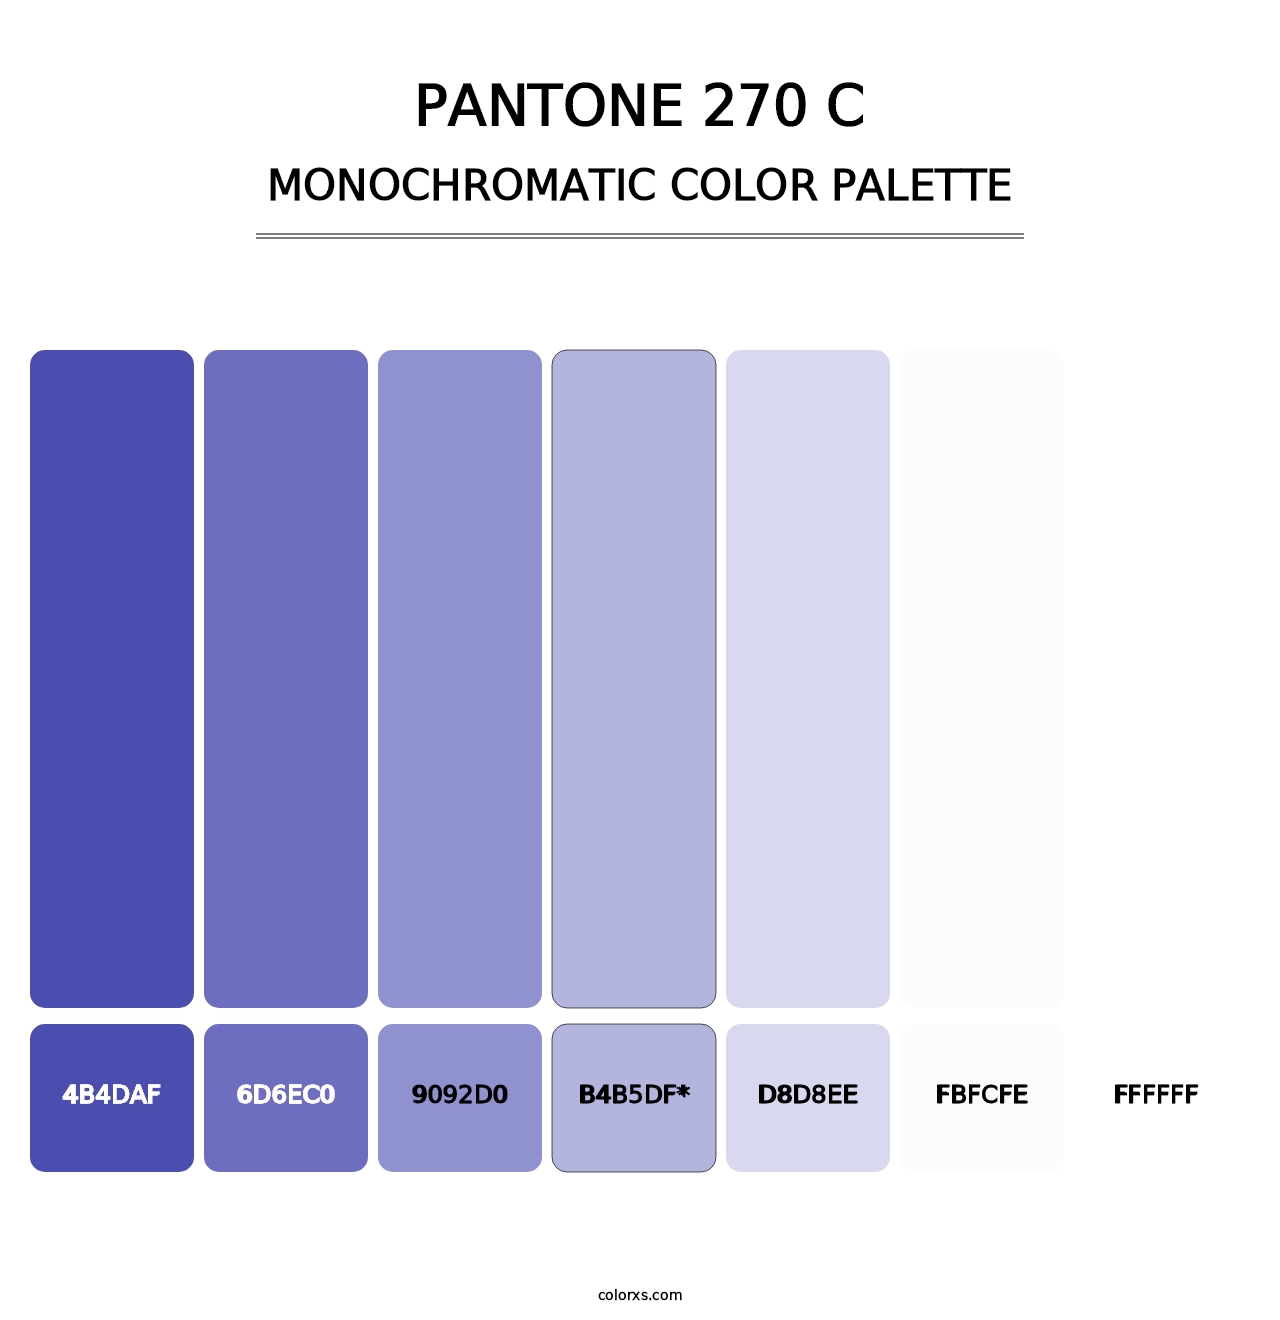 PANTONE 270 C - Monochromatic Color Palette